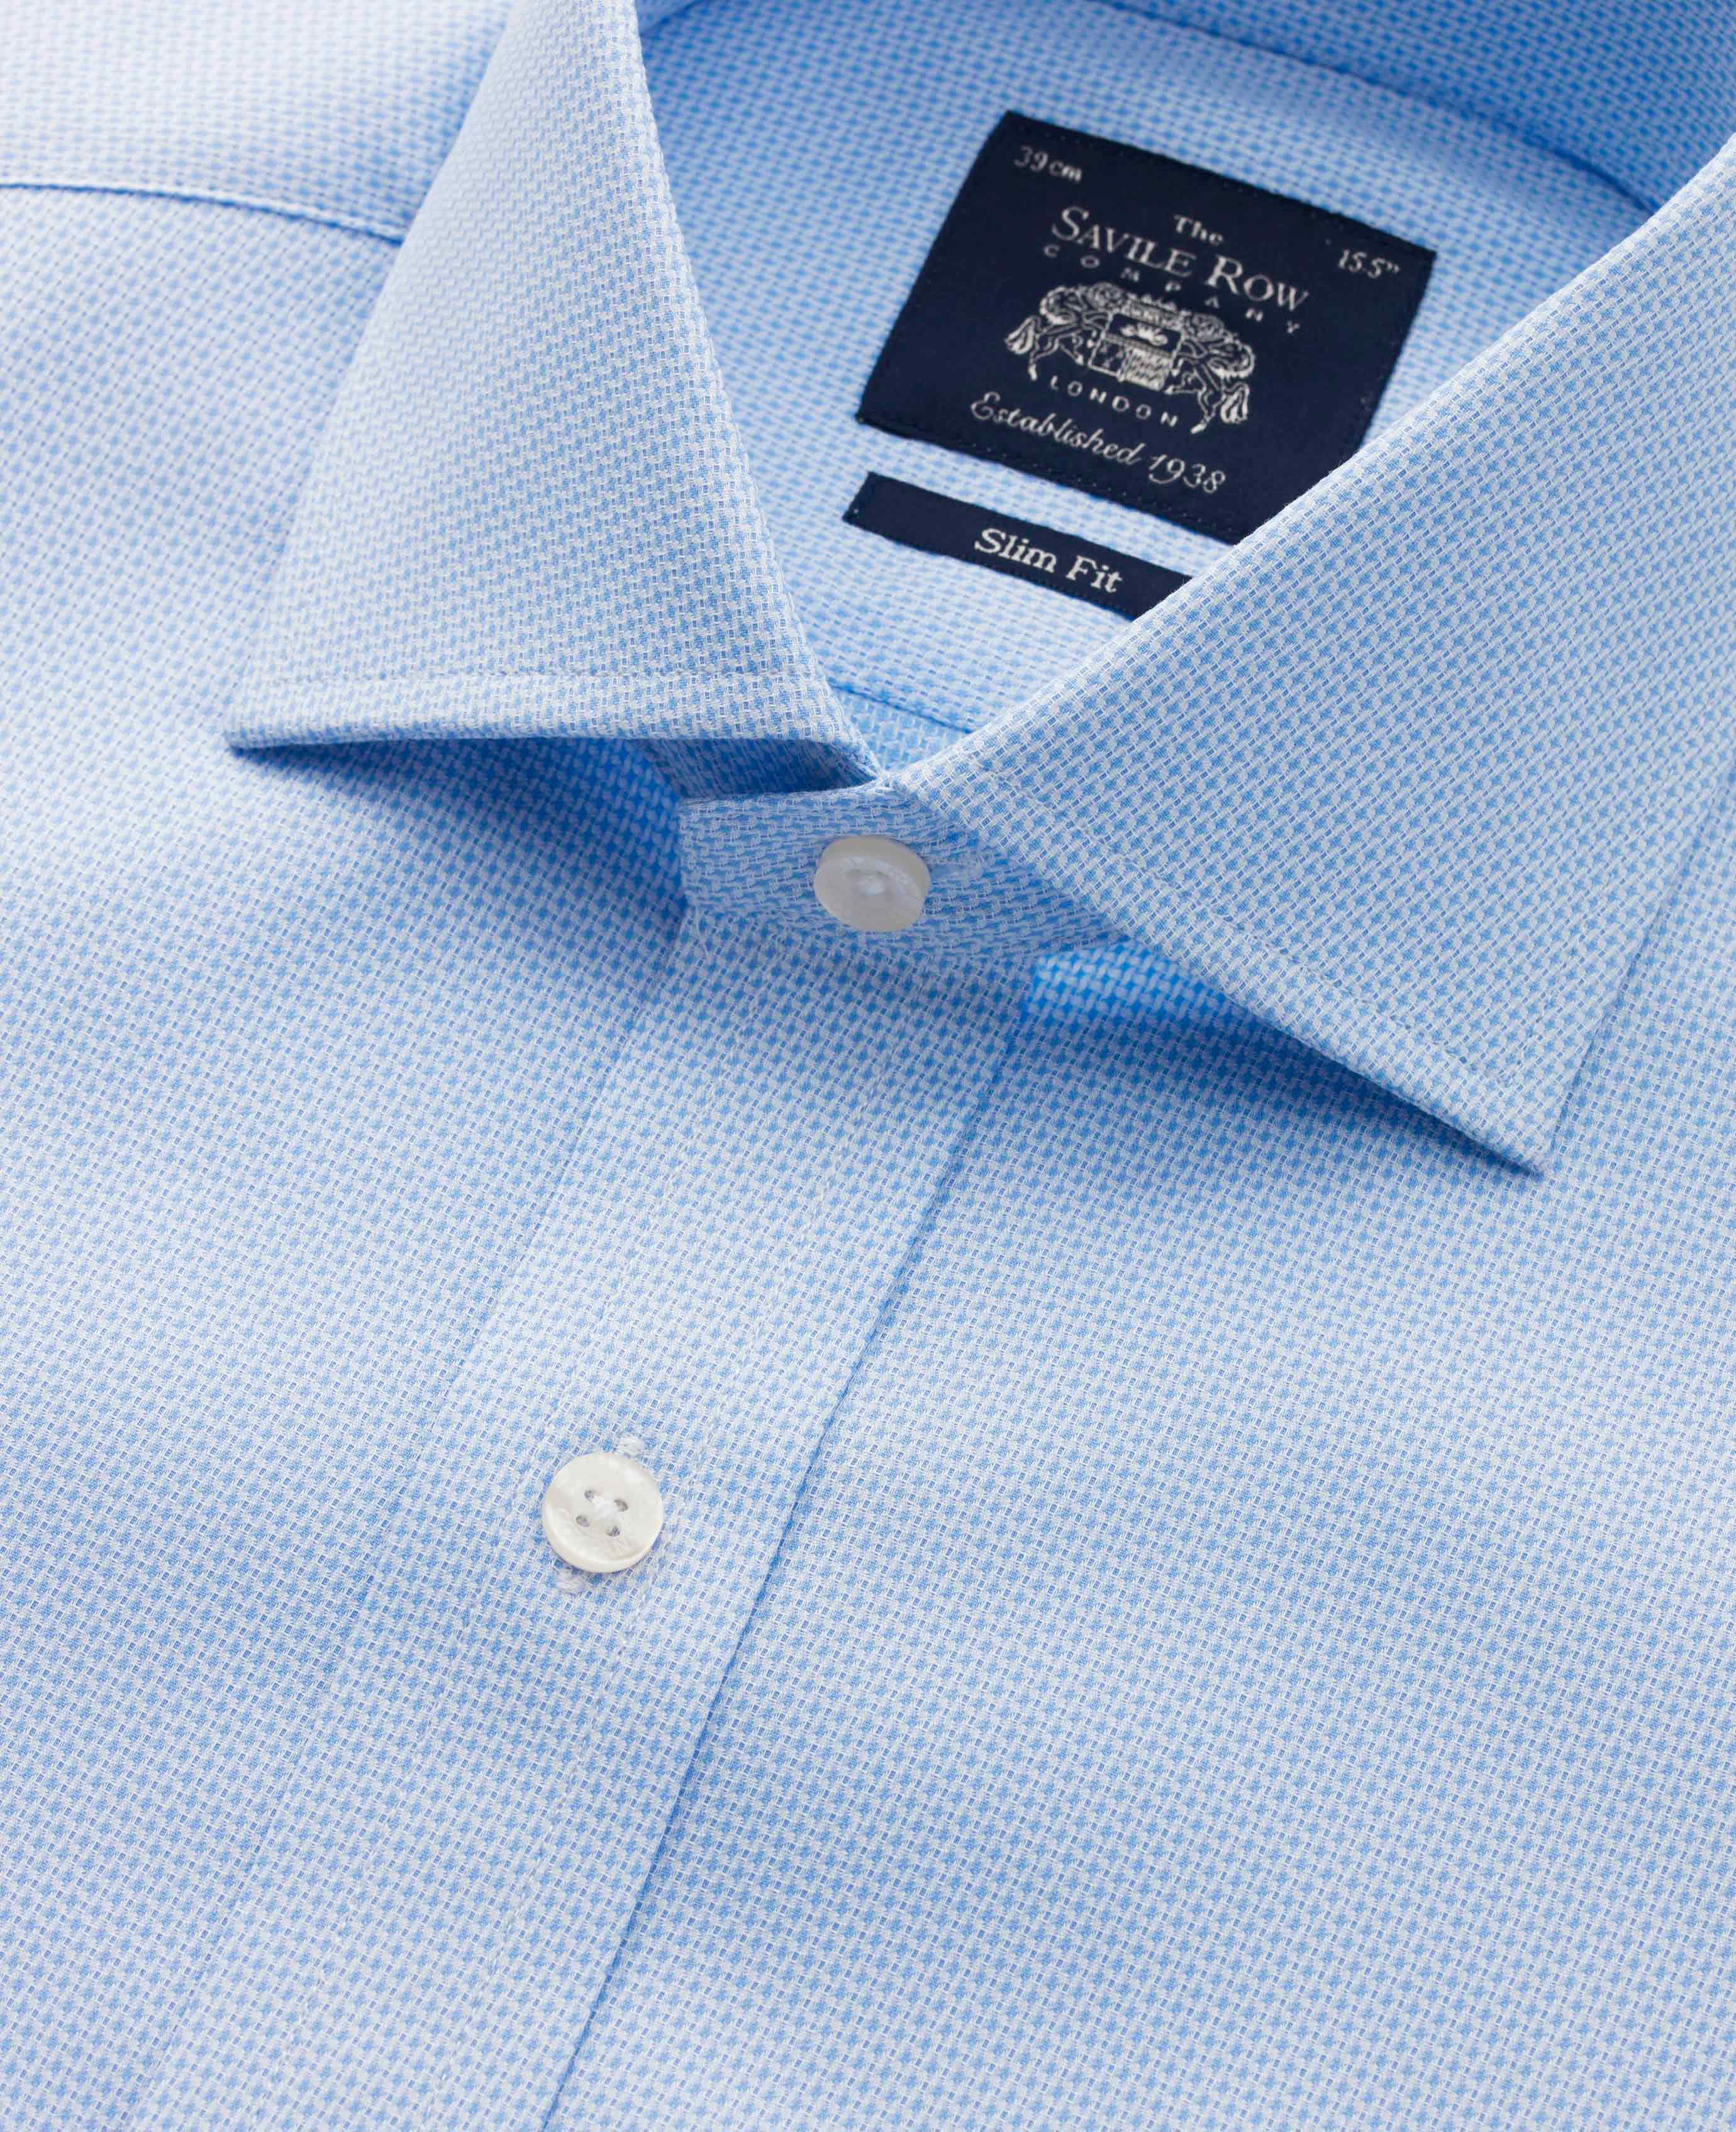 Mens Blue Dobby Weave Slim Fit Shirt | Savile Row Co